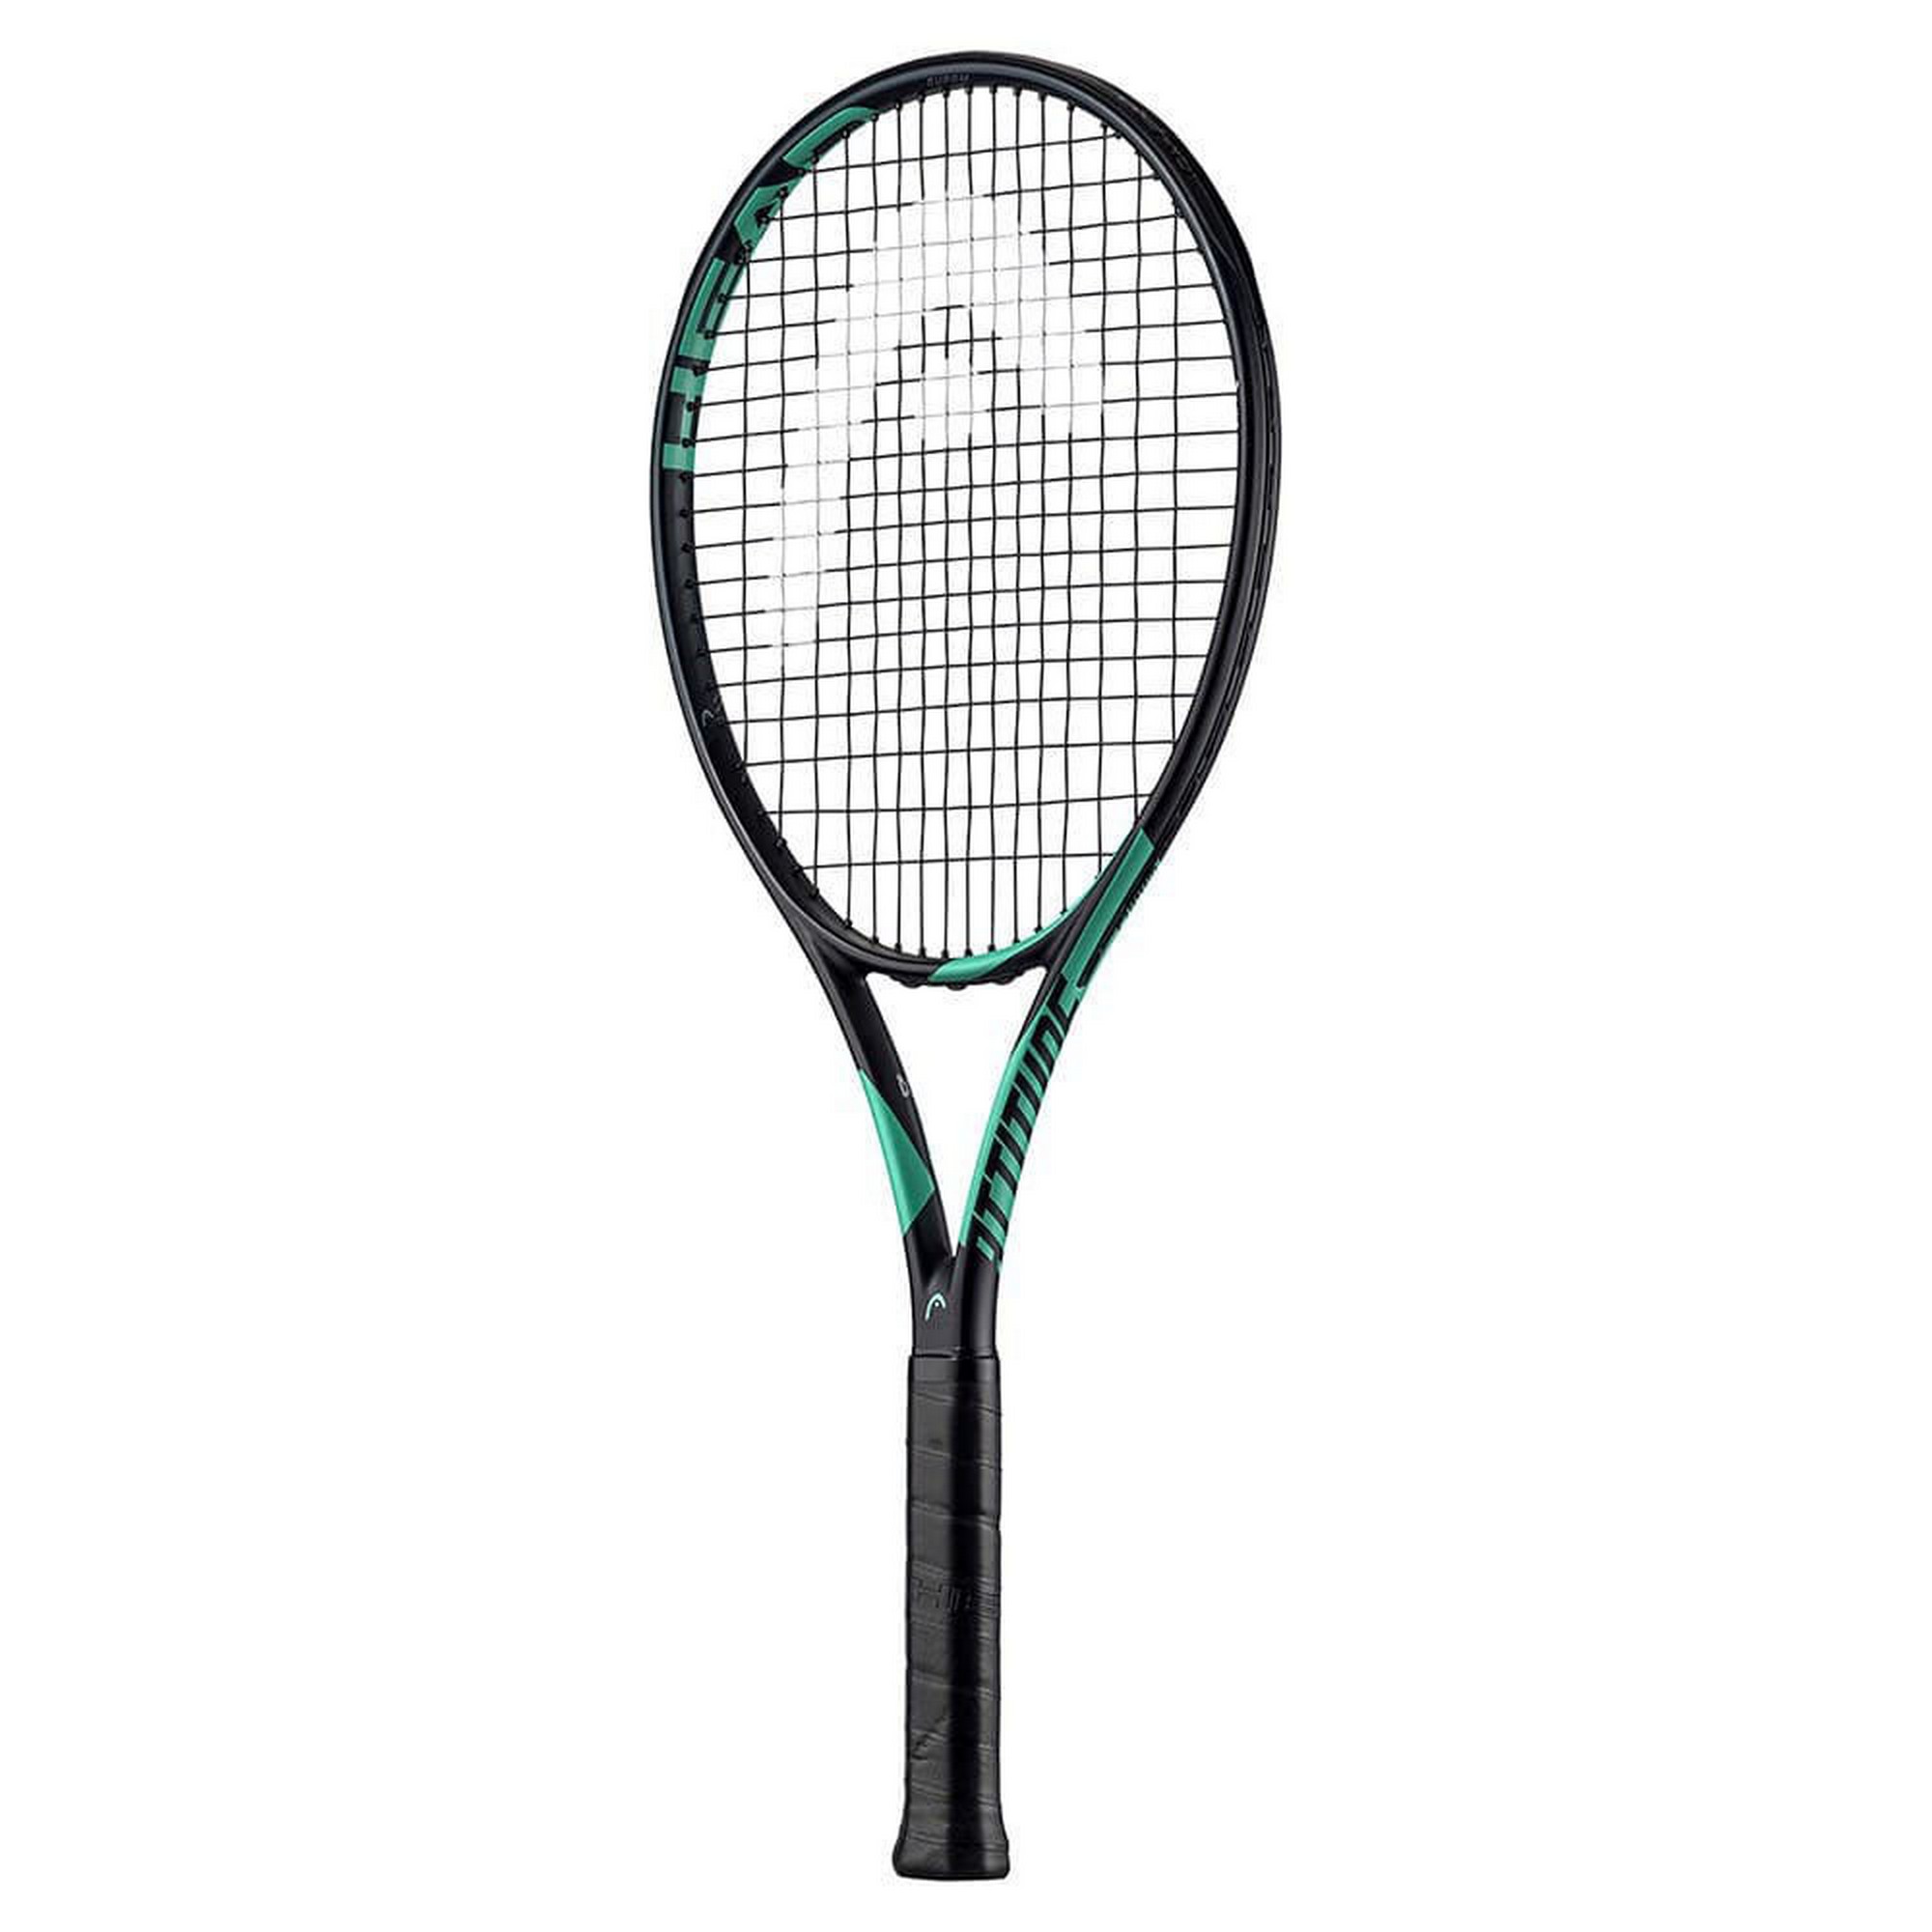 Ракетка для большого тенниса Head MX Attitude Suprm Gr2 234703 черно-зеленый